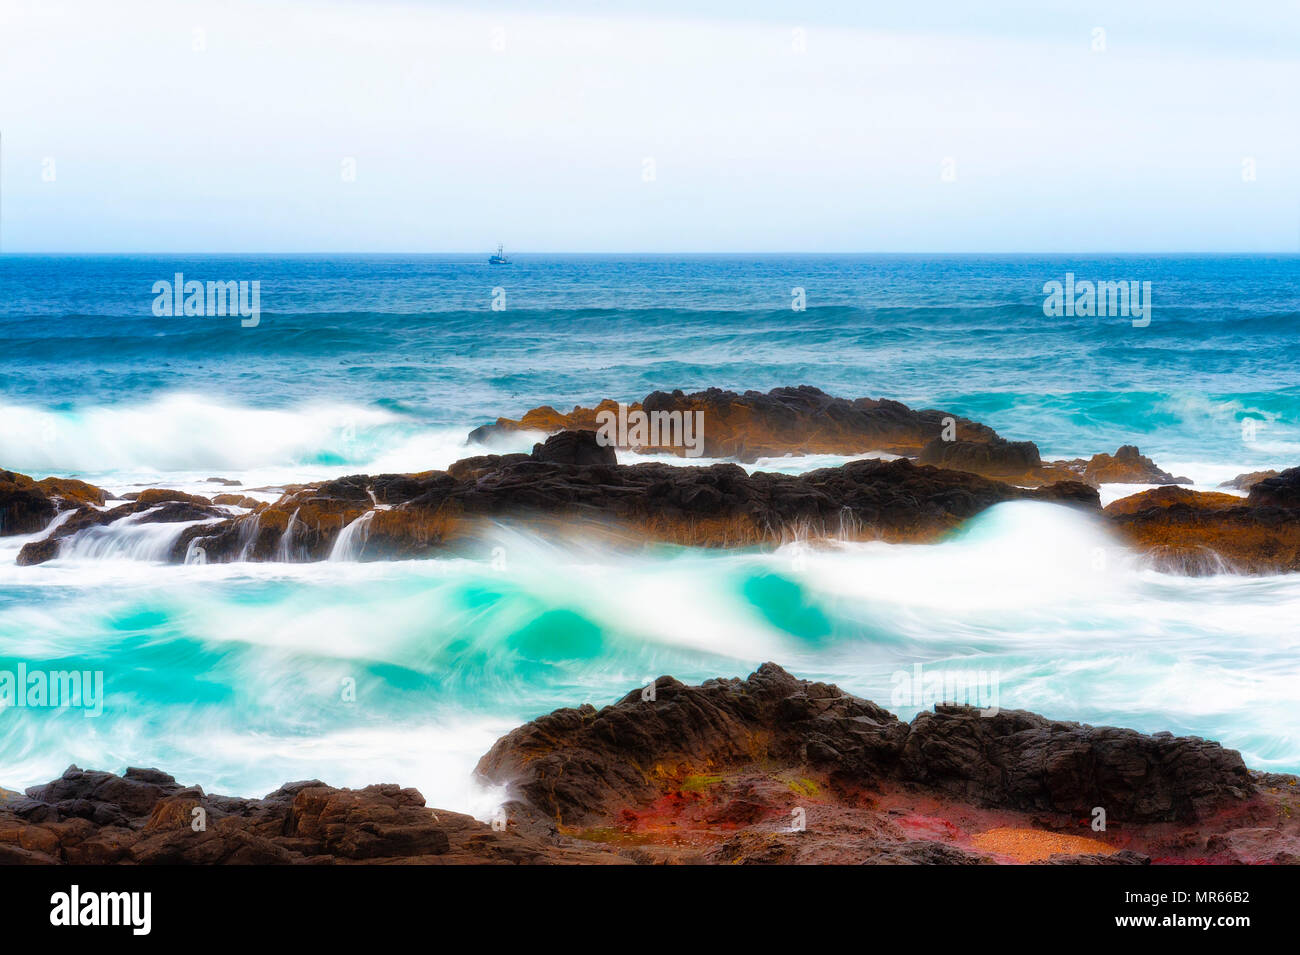 Caratteristiche geologiche guarnizione lungo la spiaggia di roccia formano barriere contro la marea dell'Oceano Pacifico. Foto Stock